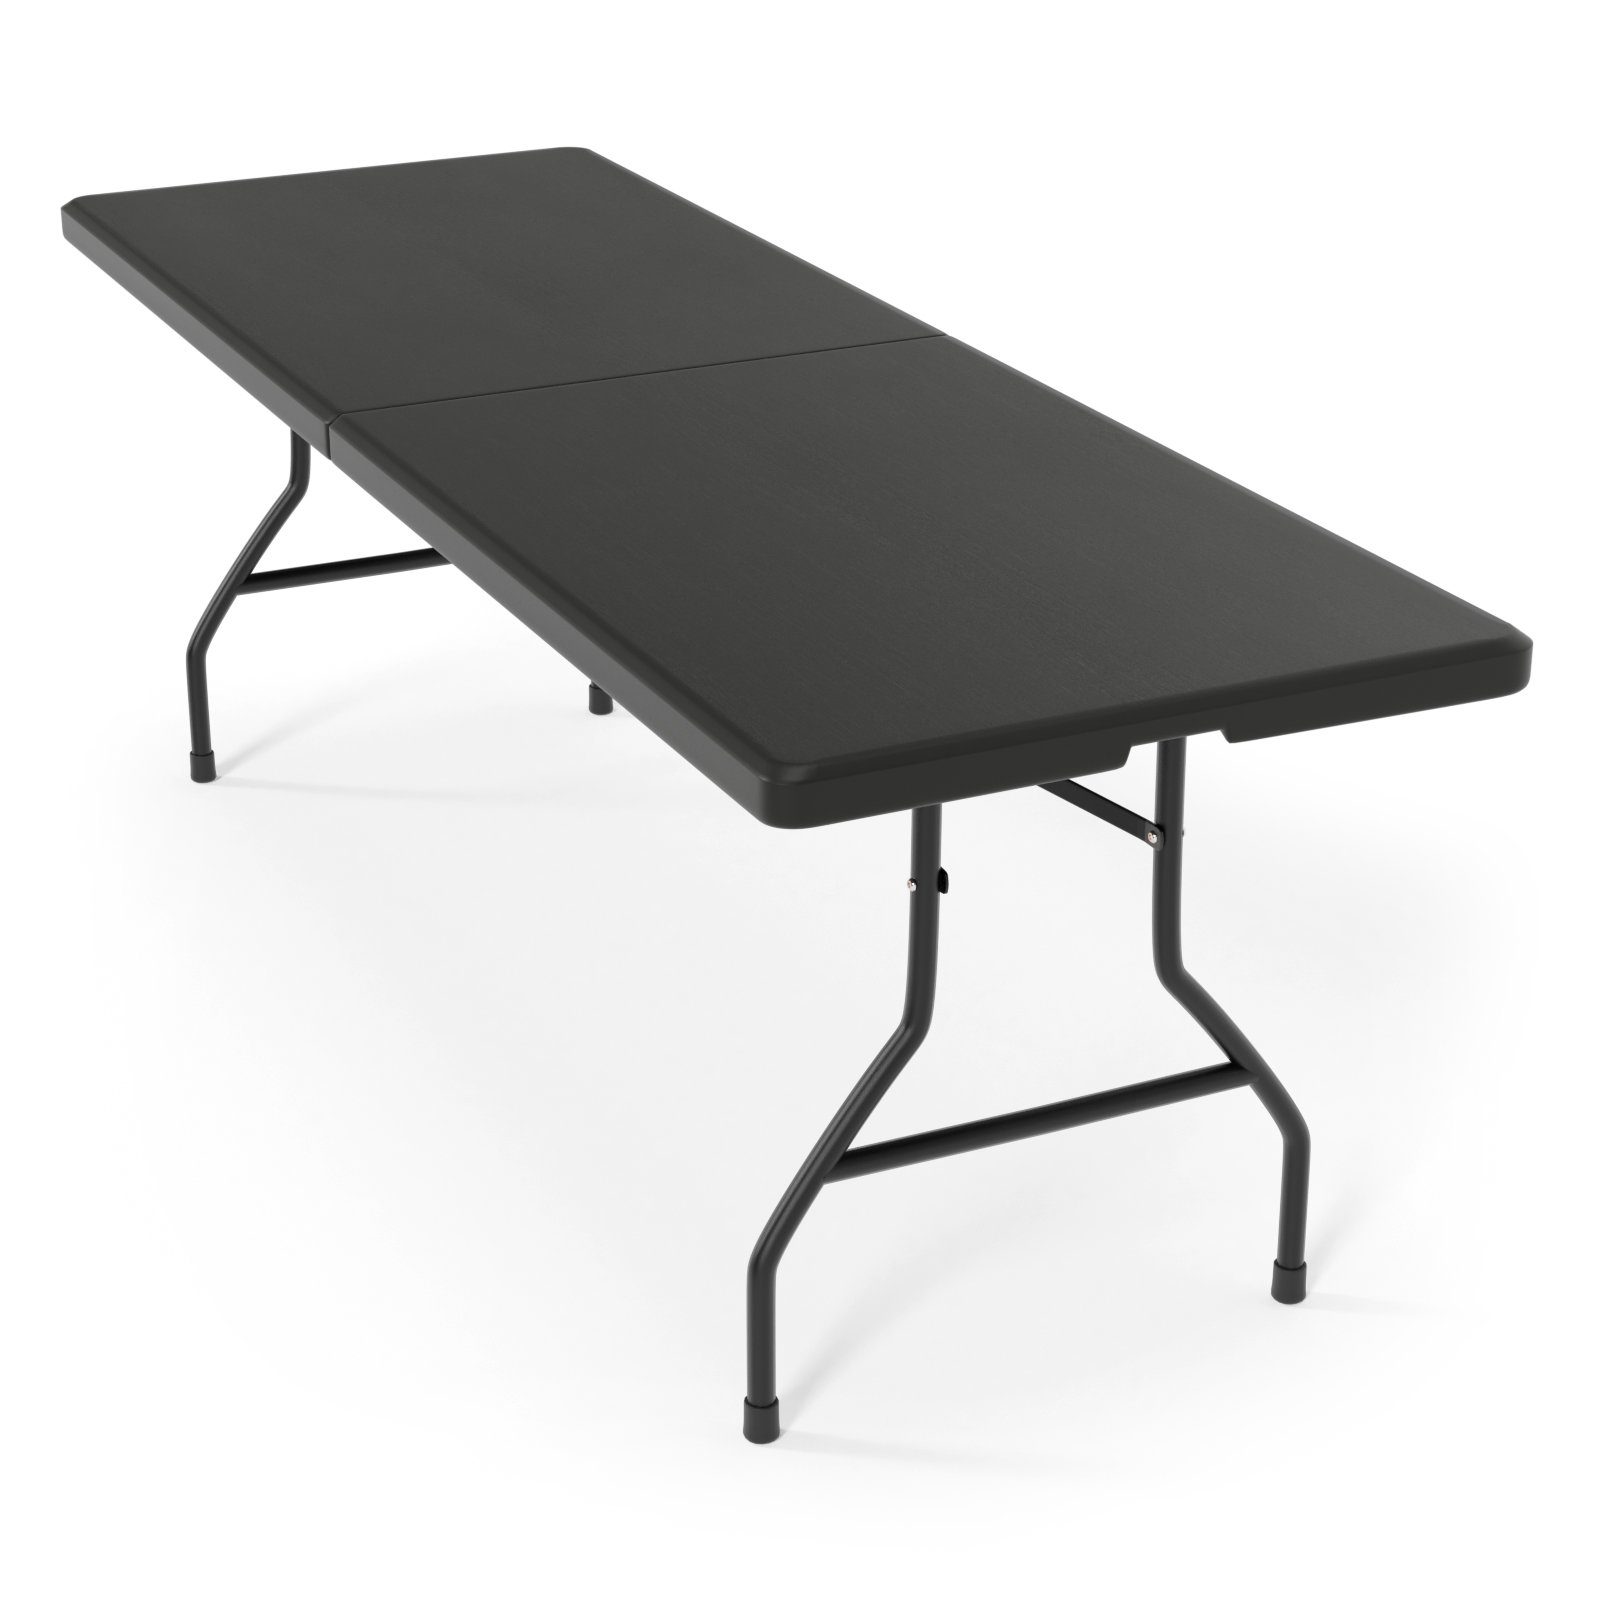 Klapptisch Klappbar Buffettisch Esstisch Gartentisch Campingtisch Tisch 183 cm 